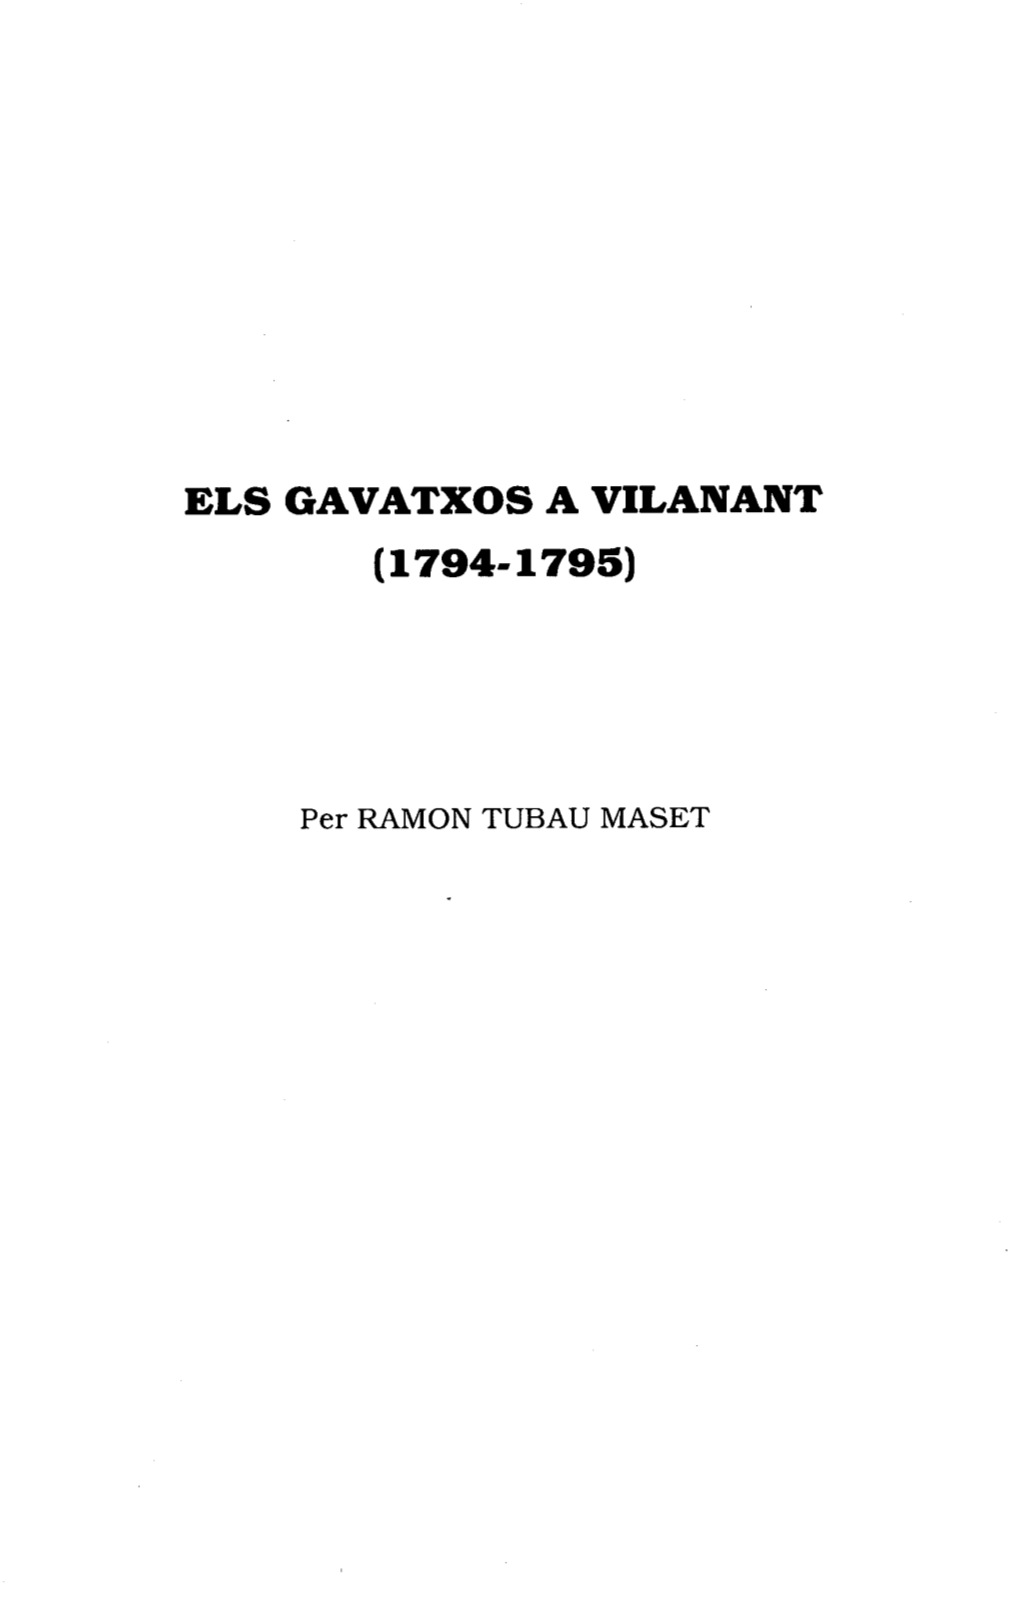 Els Gavatxos a Vilanant (1794-1795)